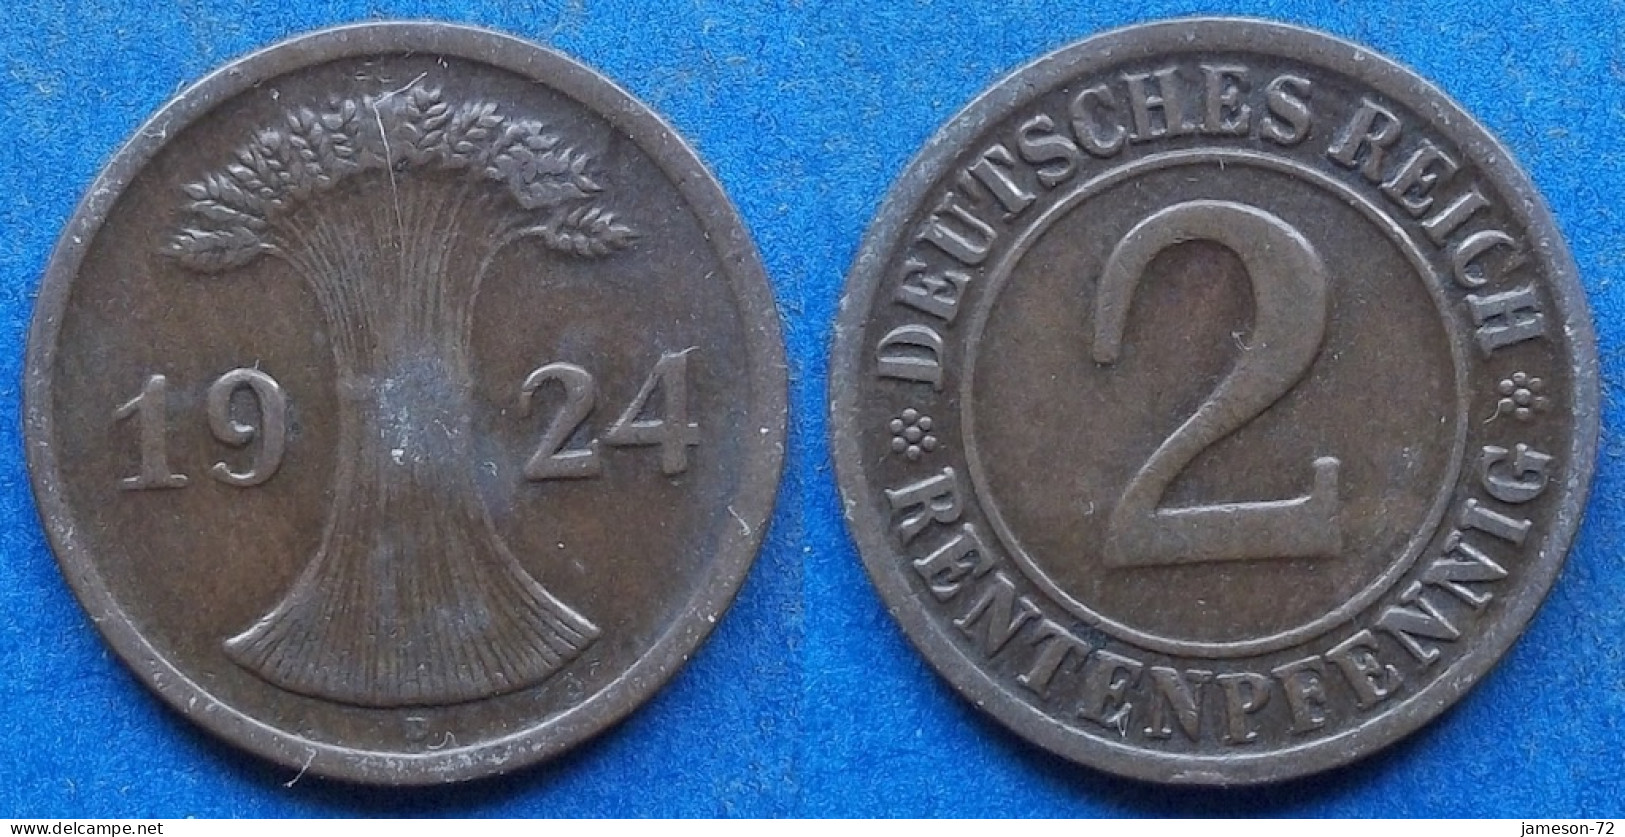 GERMANY - 2 Rentenpfennig 1924 D KM# 31 Weimar Republic Rentenmark Coinage (1923-1929) - Edelweiss Coins - 2 Rentenpfennig & 2 Reichspfennig